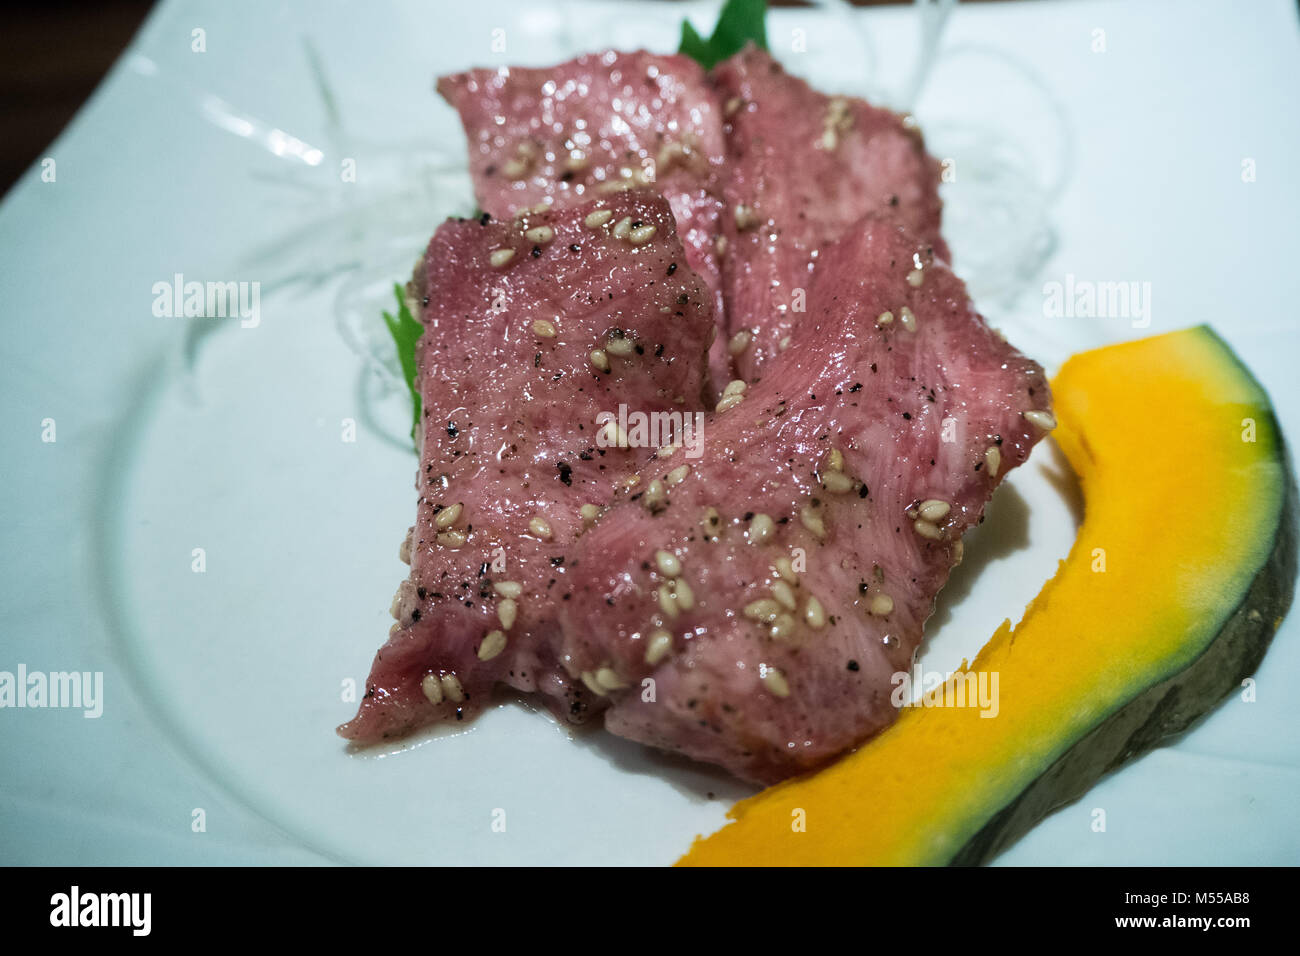 Langue de boeuf cru d'une vache wagyu japonais servi sur un plat Banque D'Images